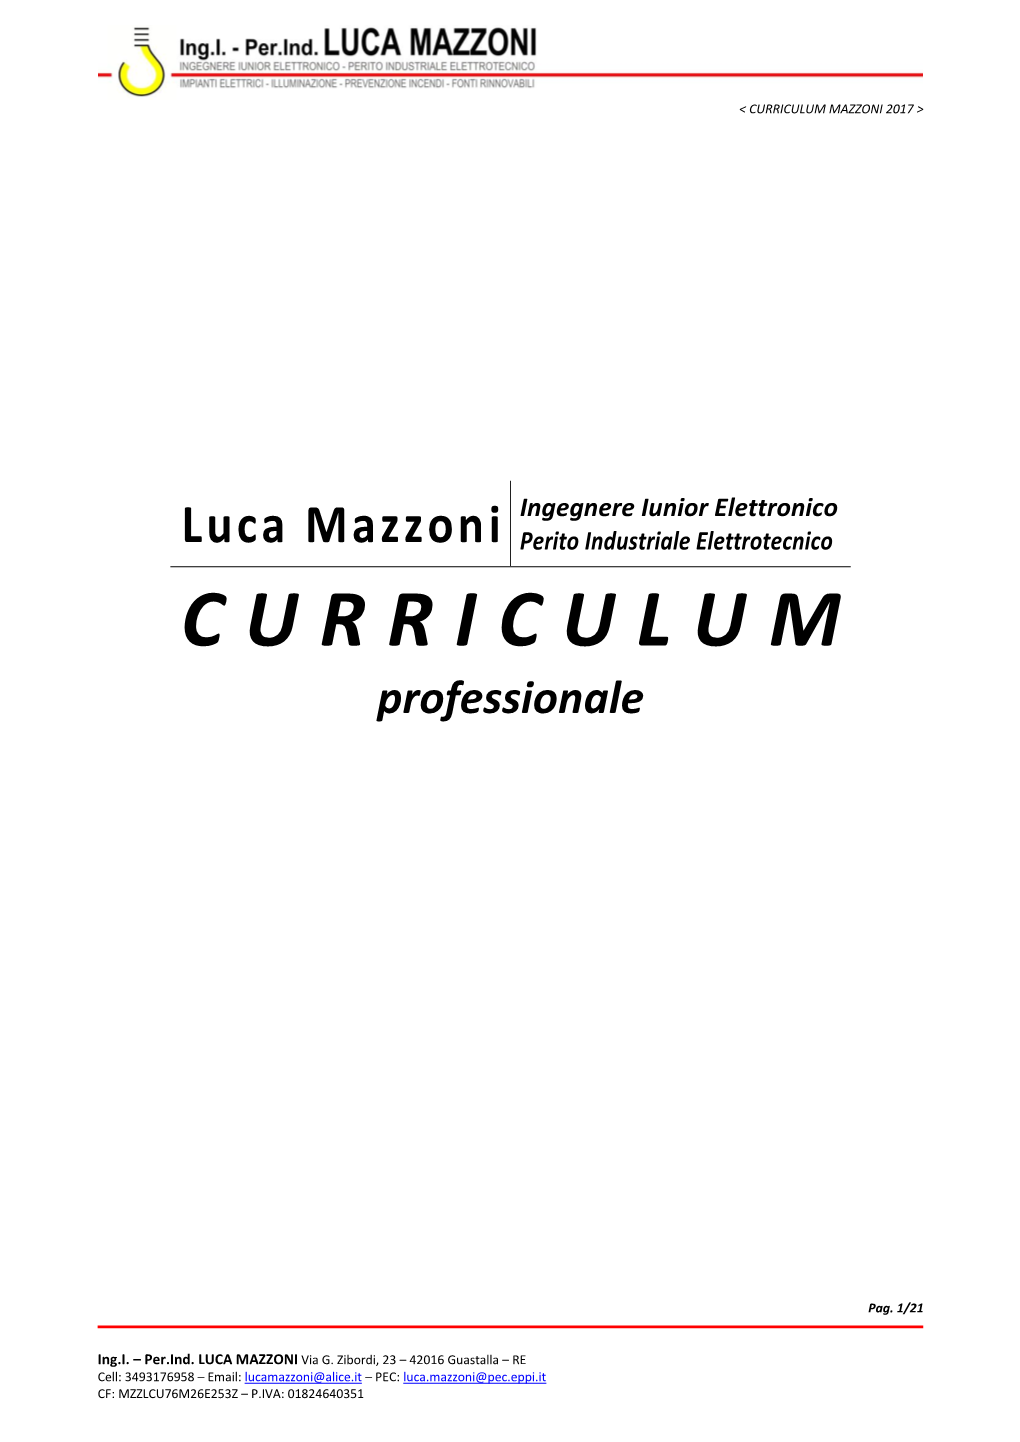 Curriculum Mazzoni 2017 >